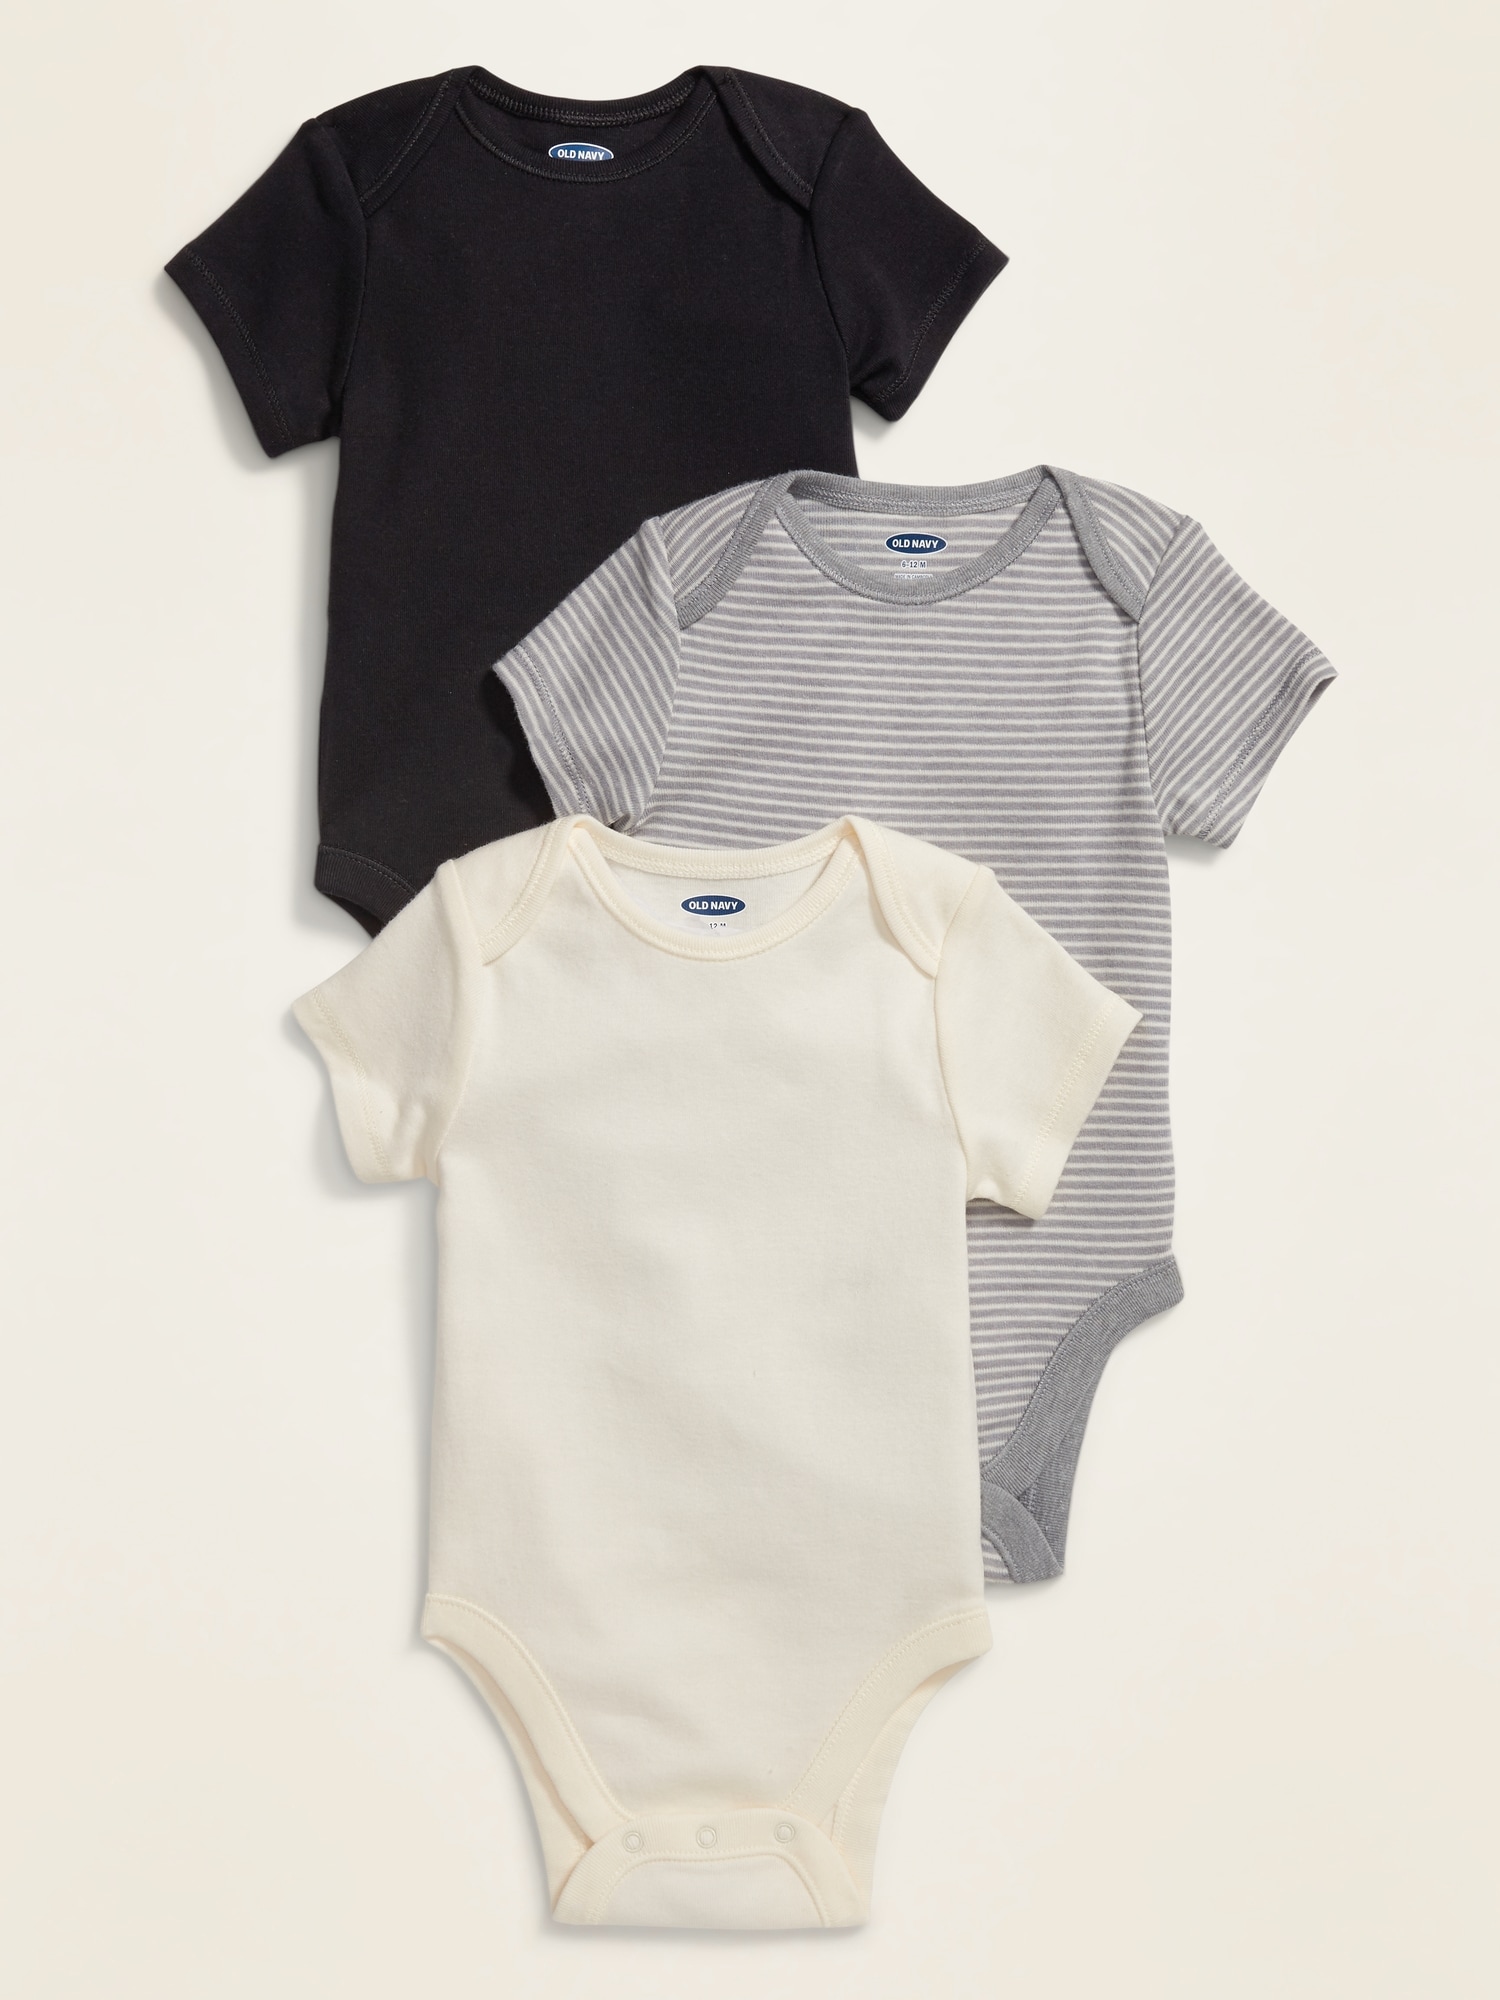 Unisex Bodysuit 3-Pack for Baby